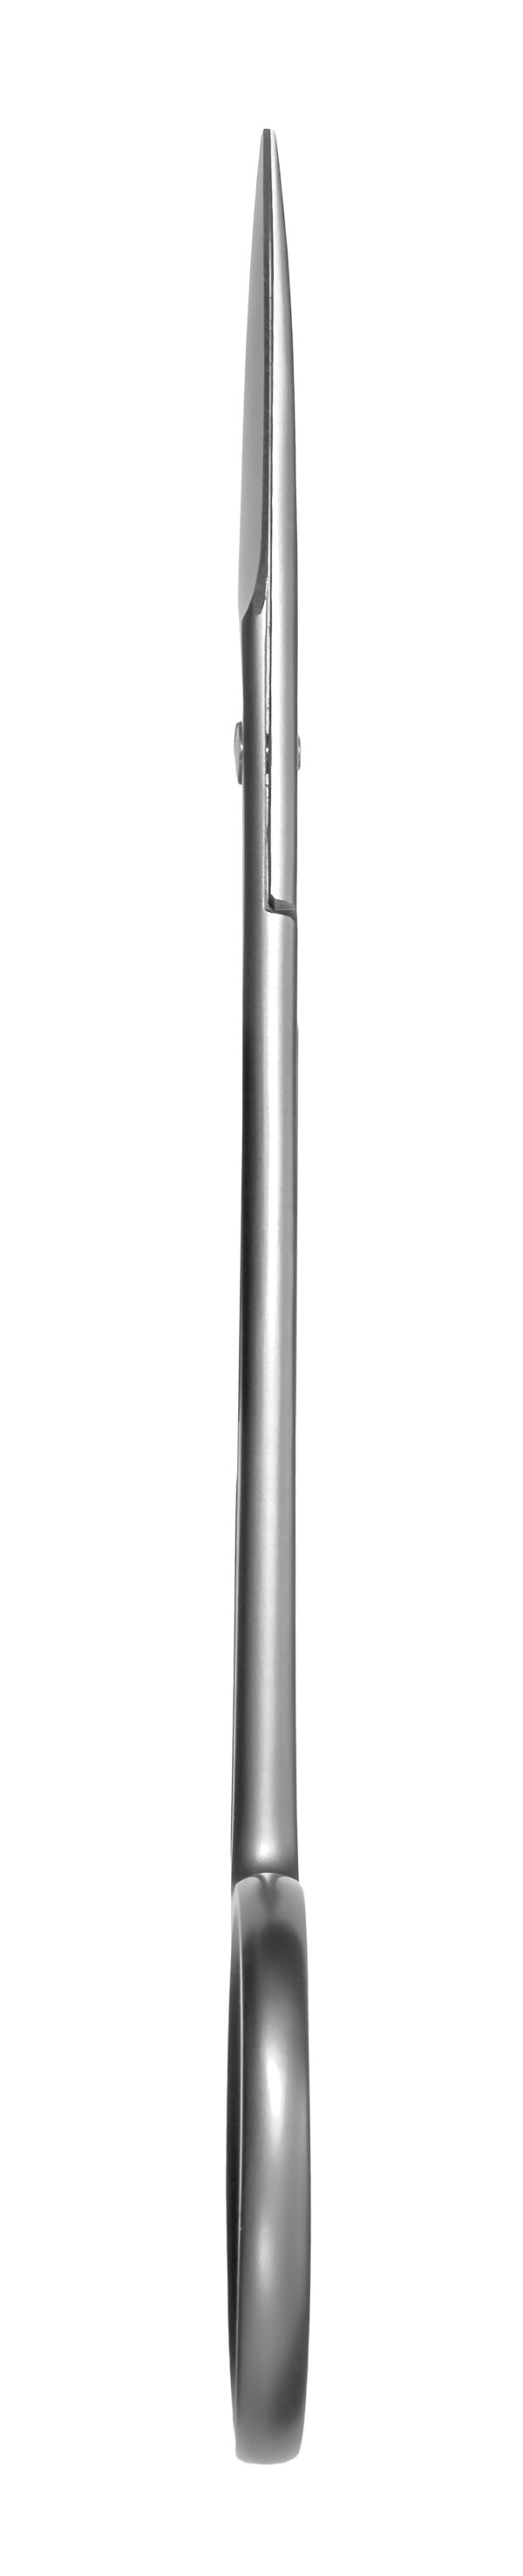 DSC2045 kopia 600x2954 - Nożyczki ze stali chirurgicznej do paznokci i skórek proste dł. 110mm